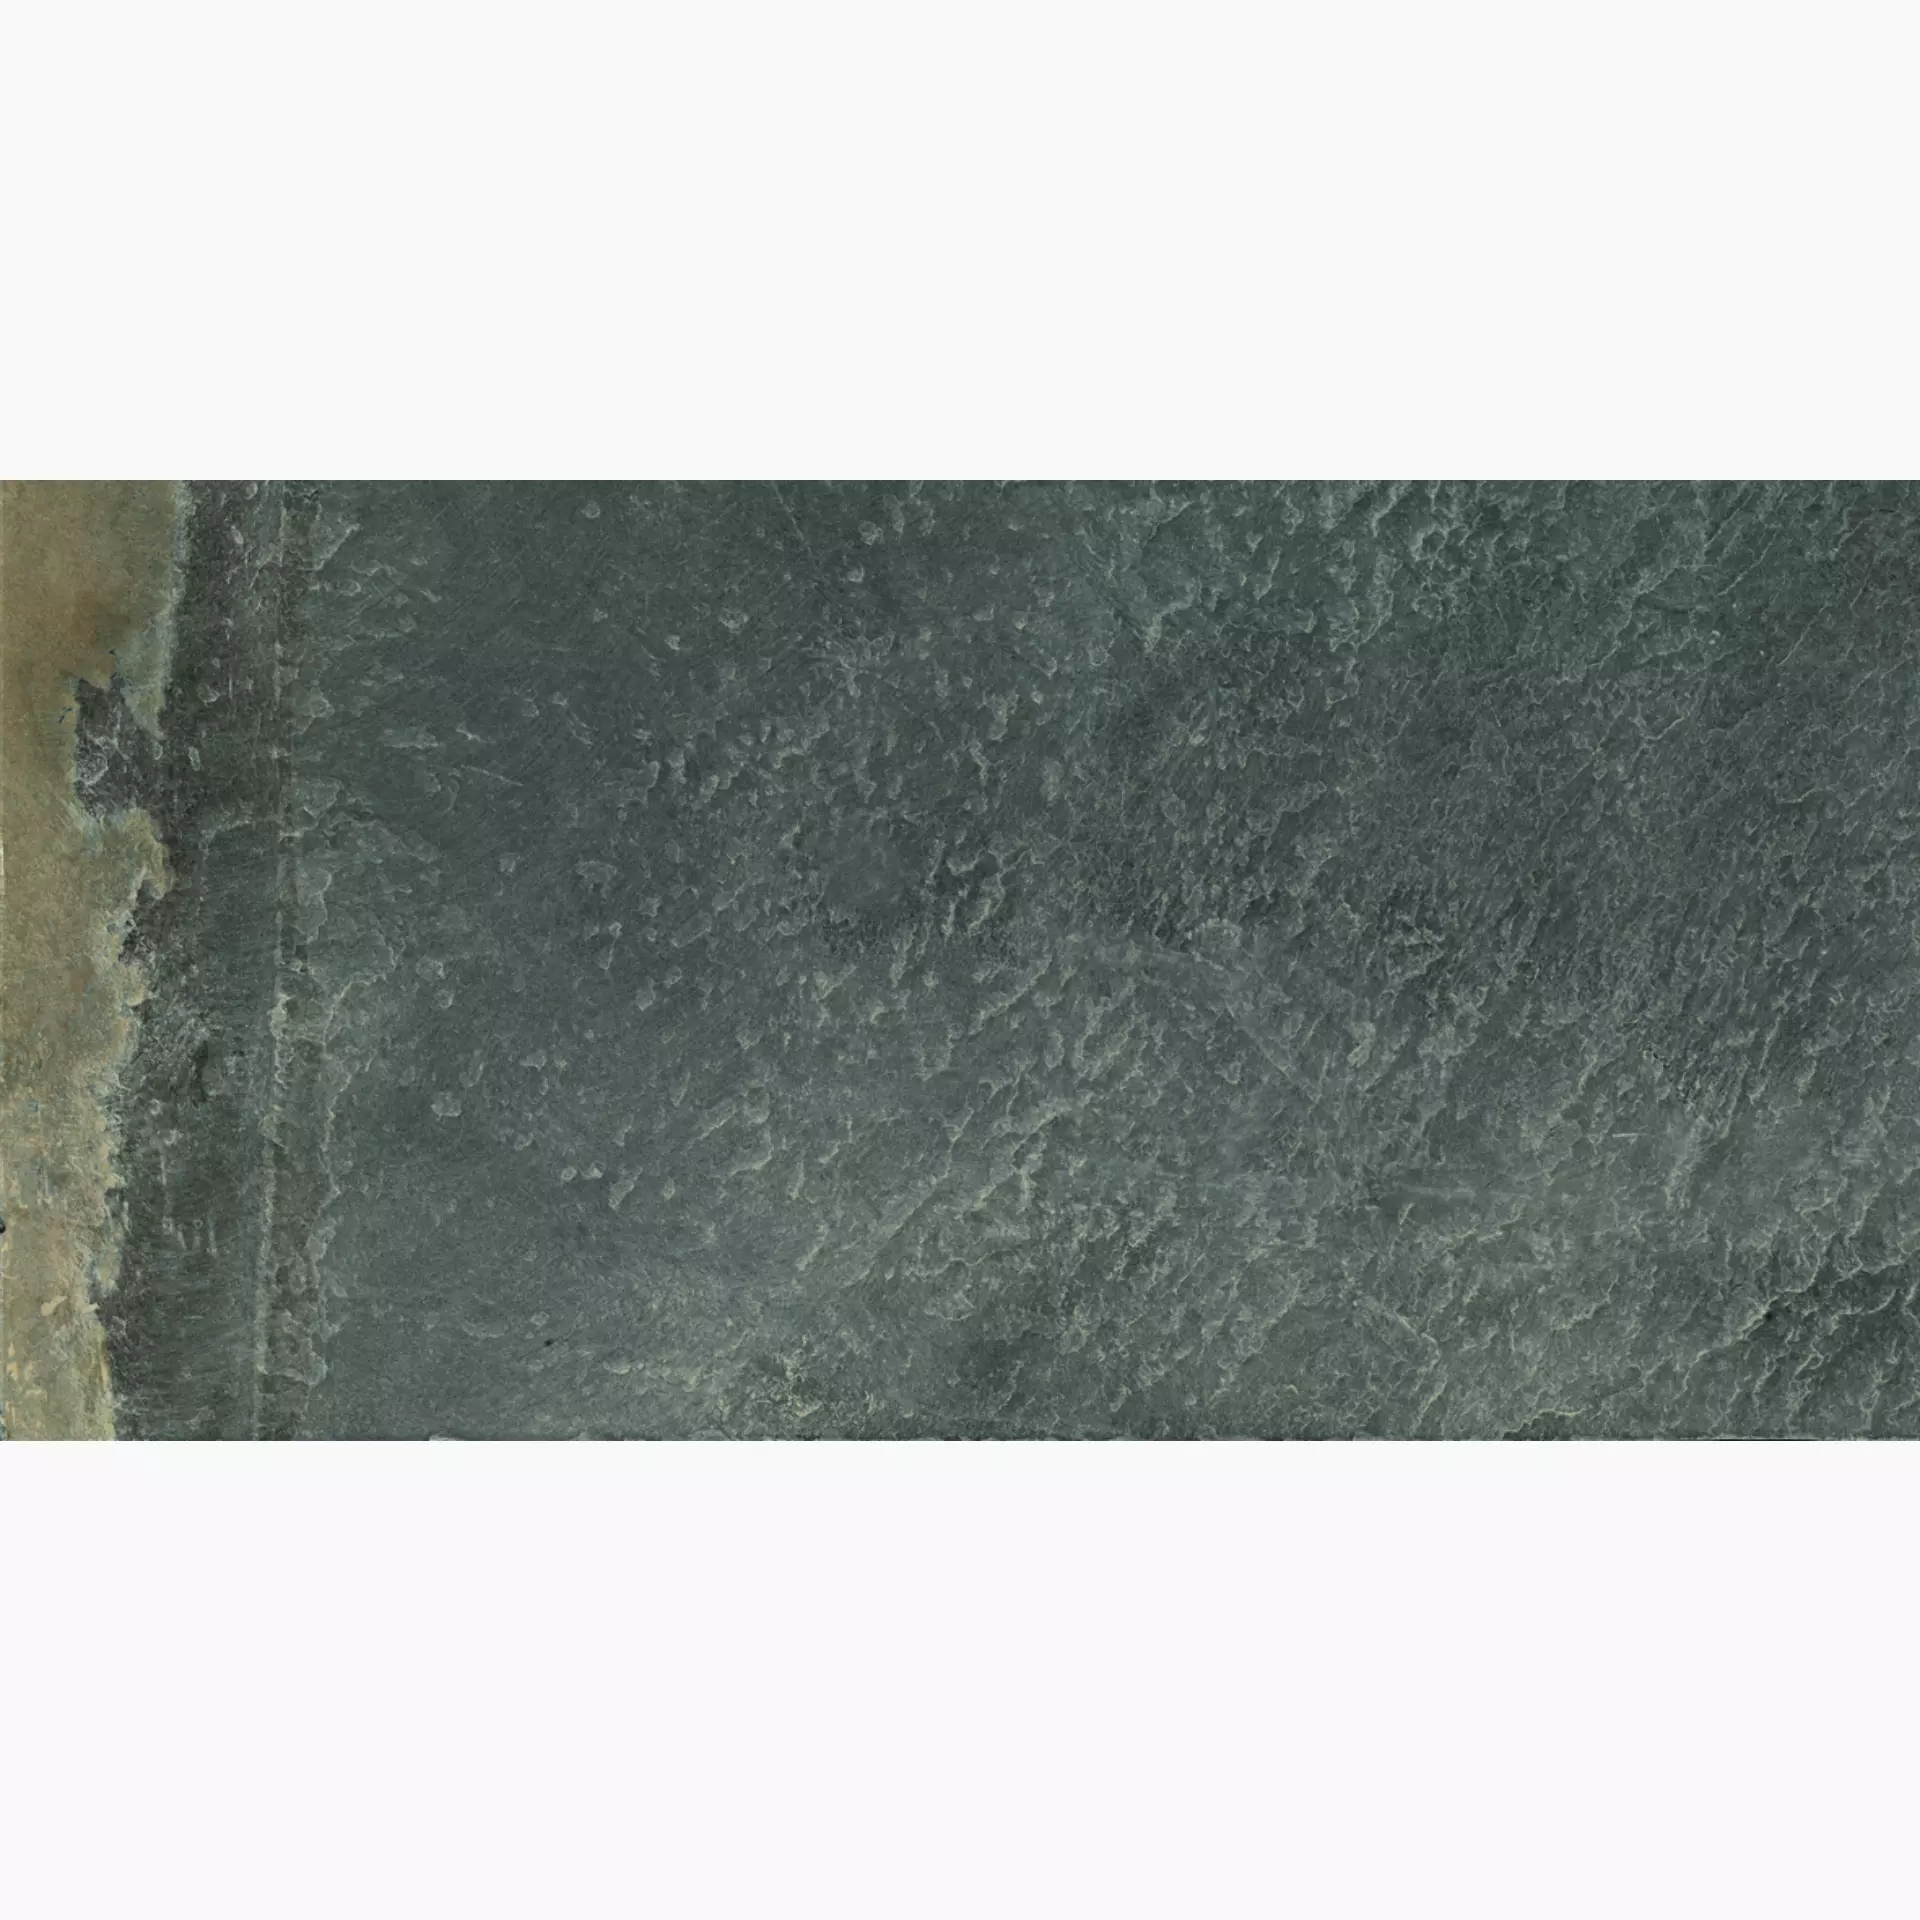 Ergon Cornerstone Slate Multicolor Naturale E2Q0 30x60cm rectified 9,5mm